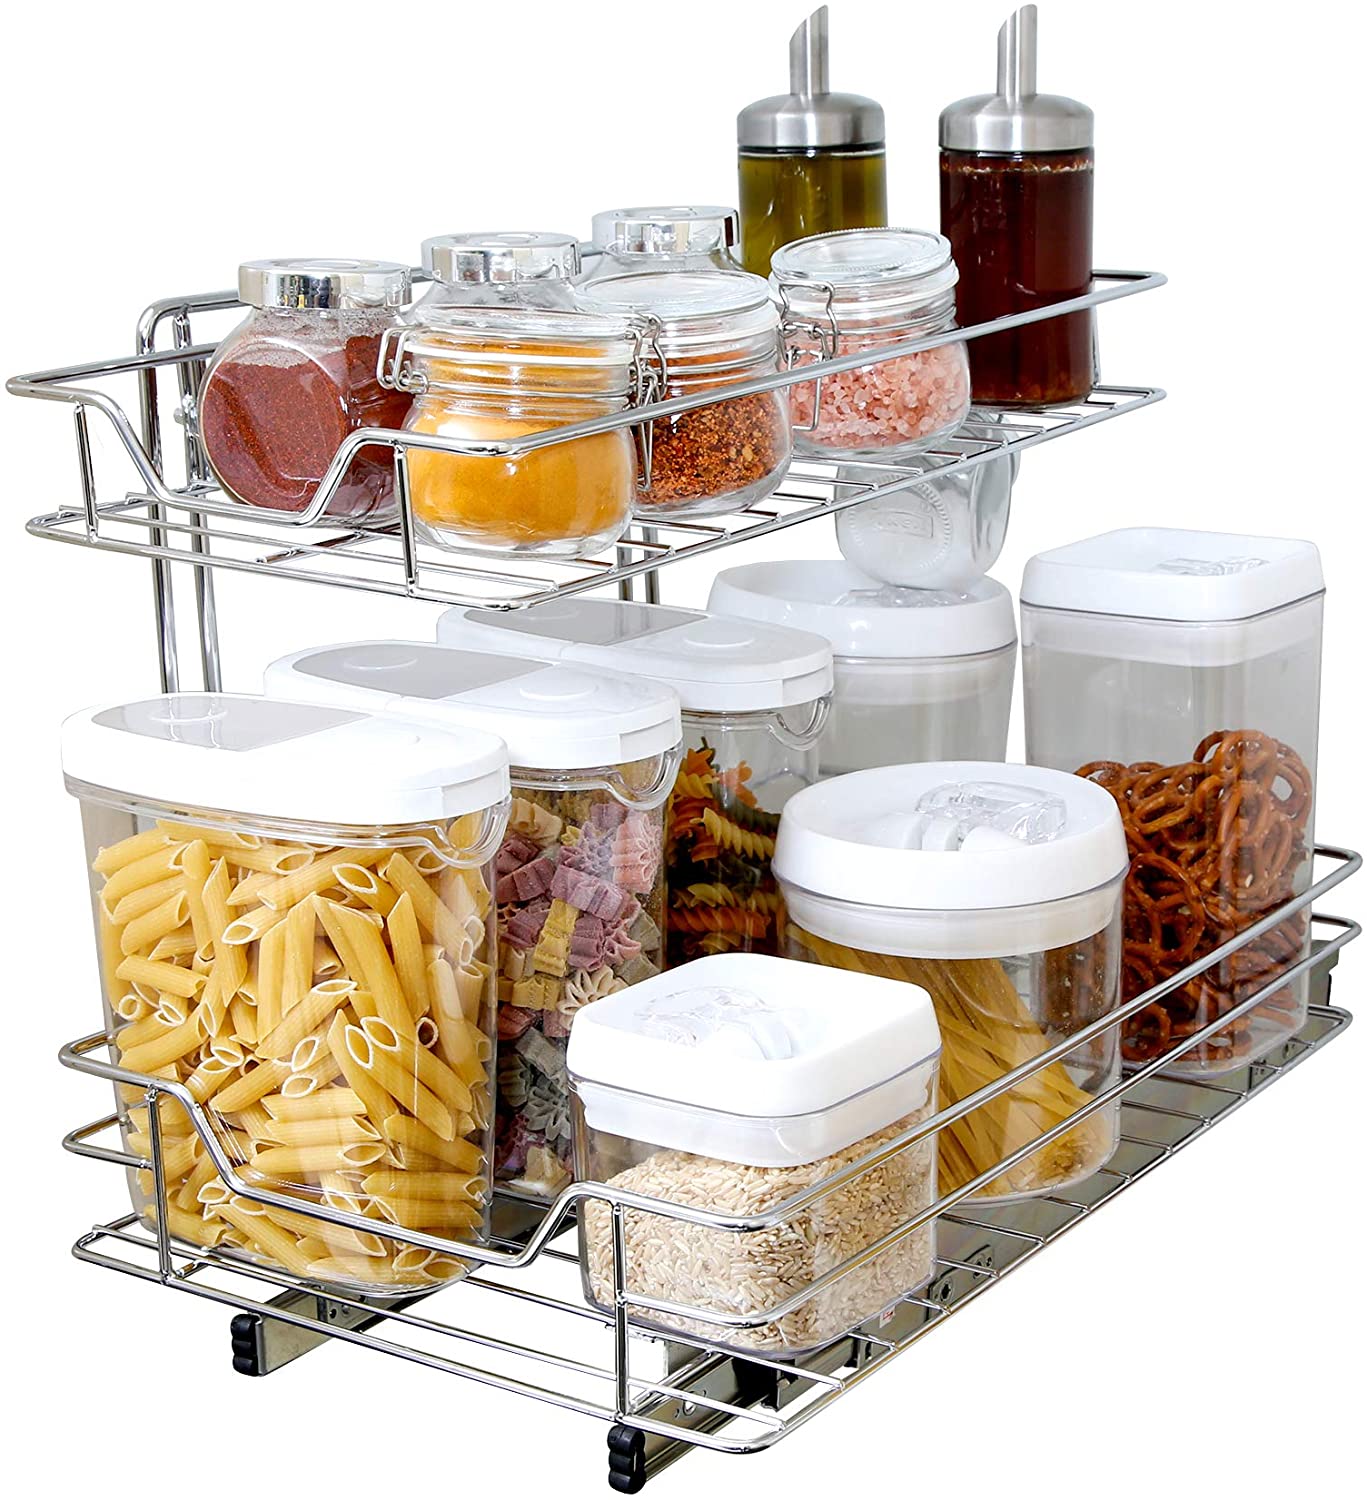 https://www.shopsmartdesign.com/cdn/shop/products/sliding-pull-out-metal-cabinet-shelf-multiple-sizes-smart-design-kitchen-8436290-incrementing-number-908745.jpg?v=1679337174